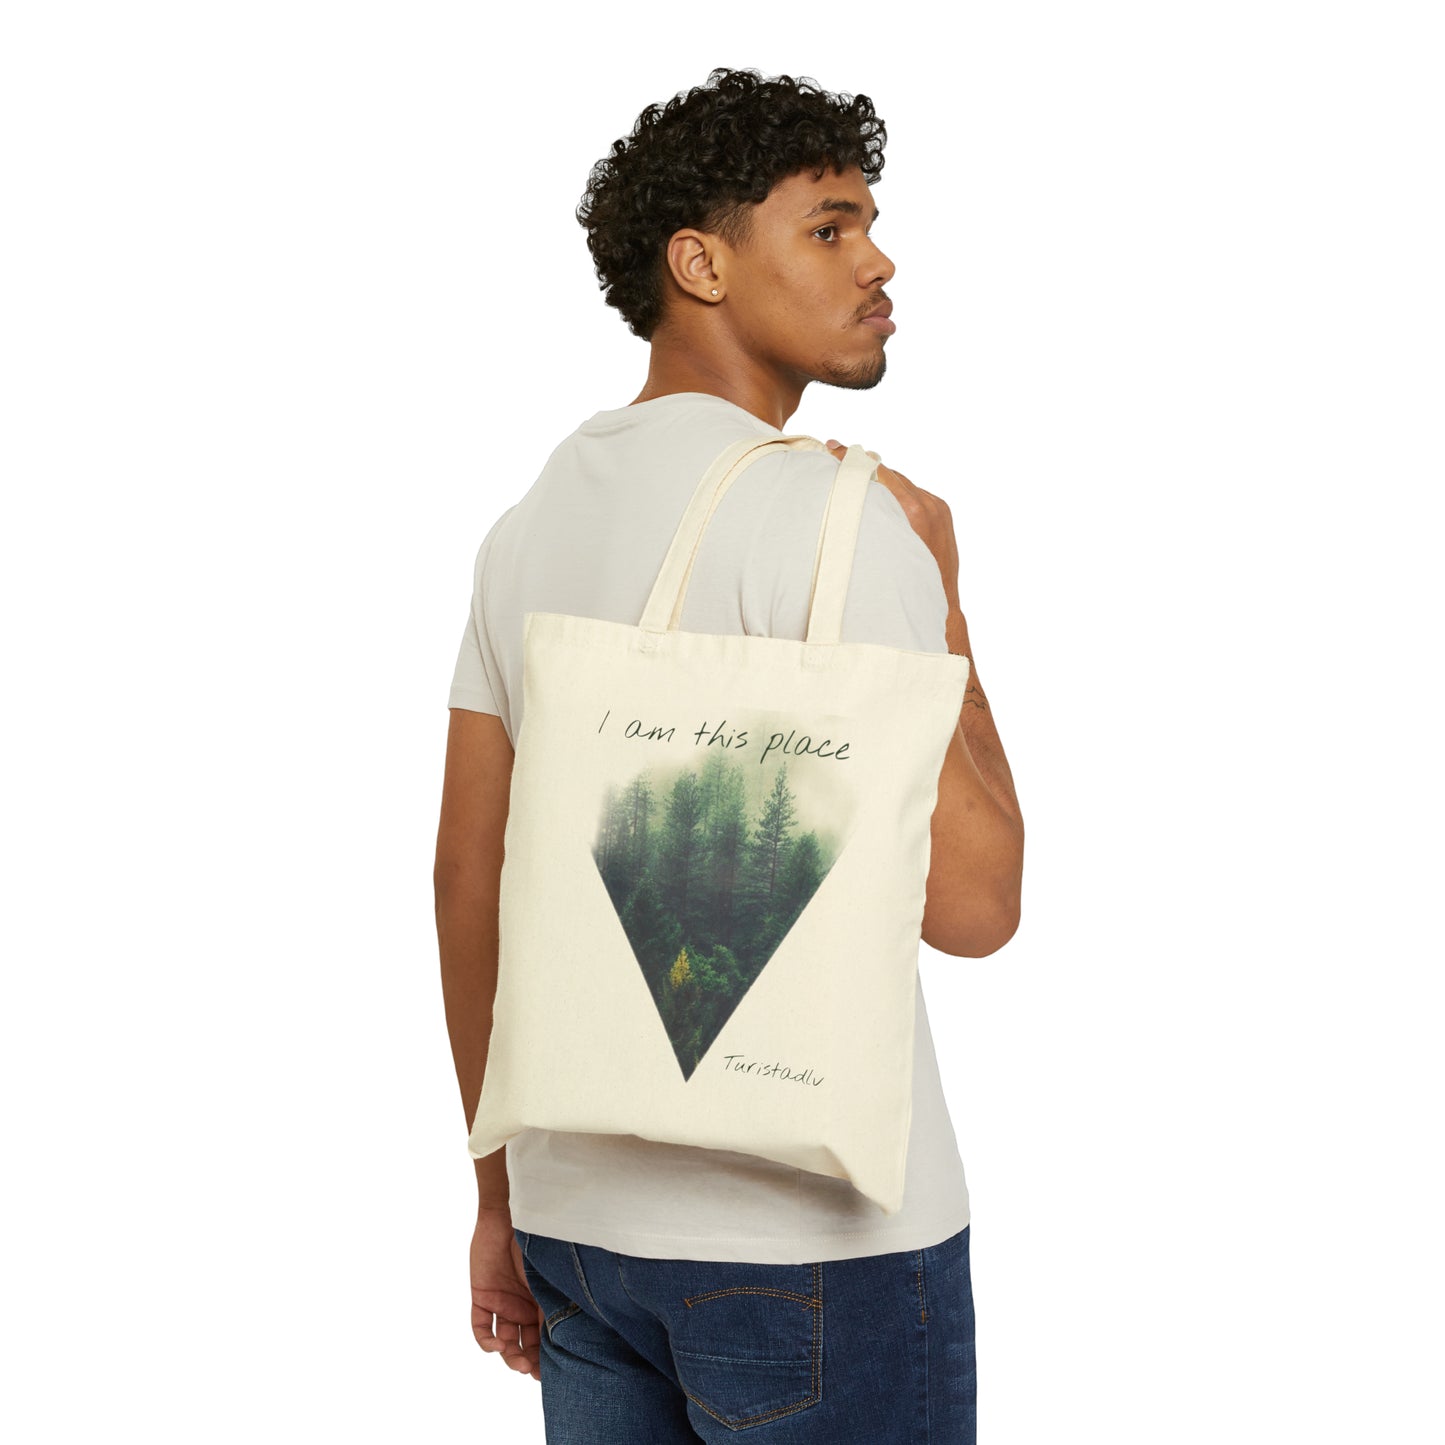 Tote Bag montaña, bolsa de lona de viajero, regalo de viaje, bolsa de excursión, bolsa de ecológica